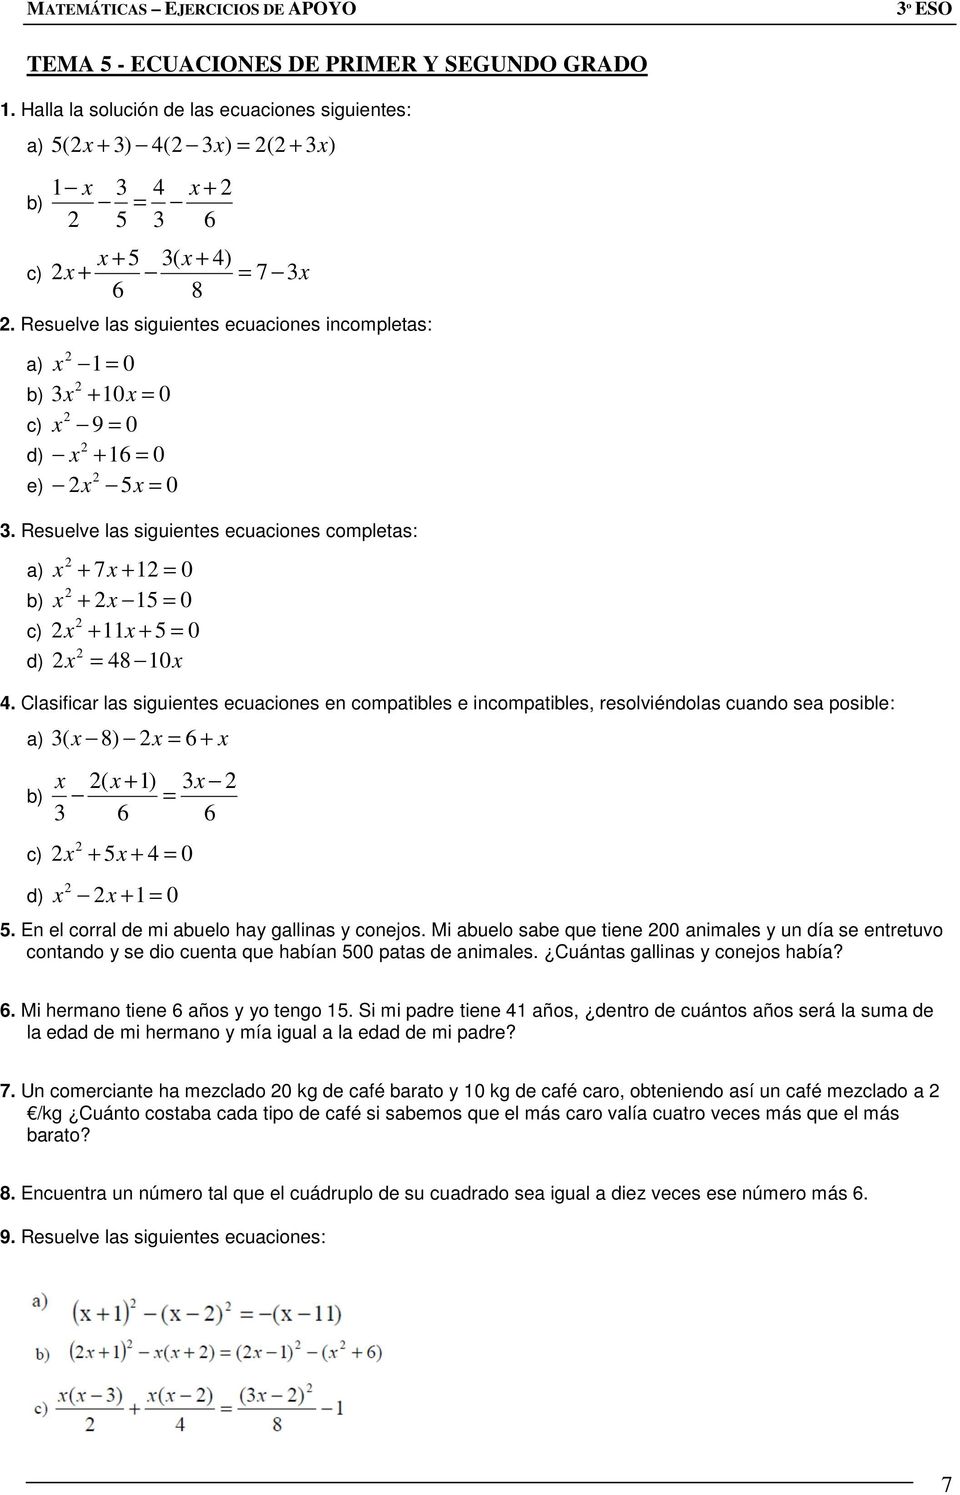 Clasificar las siguientes ecuaciones en compatibles e incompatibles, resolviéndolas cuando sea posible a) ( x ) x = x b) x ( x ) x = c) x x = 0 d) x x = 0.